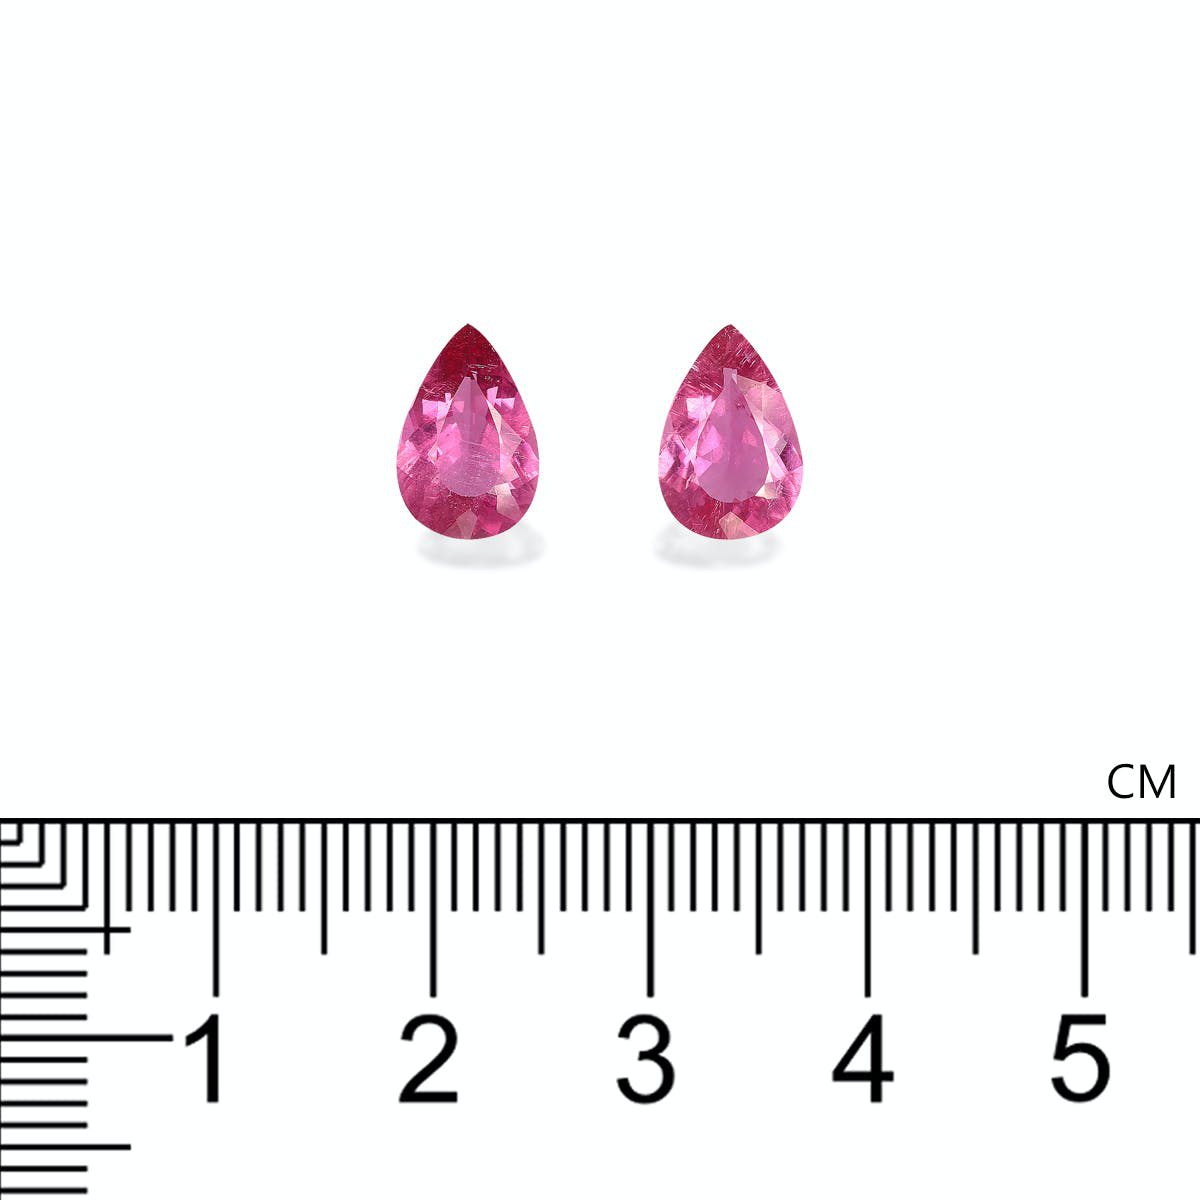 Fuscia Pink Rubellite Tourmaline 2.77ct - Pair (RL1293)